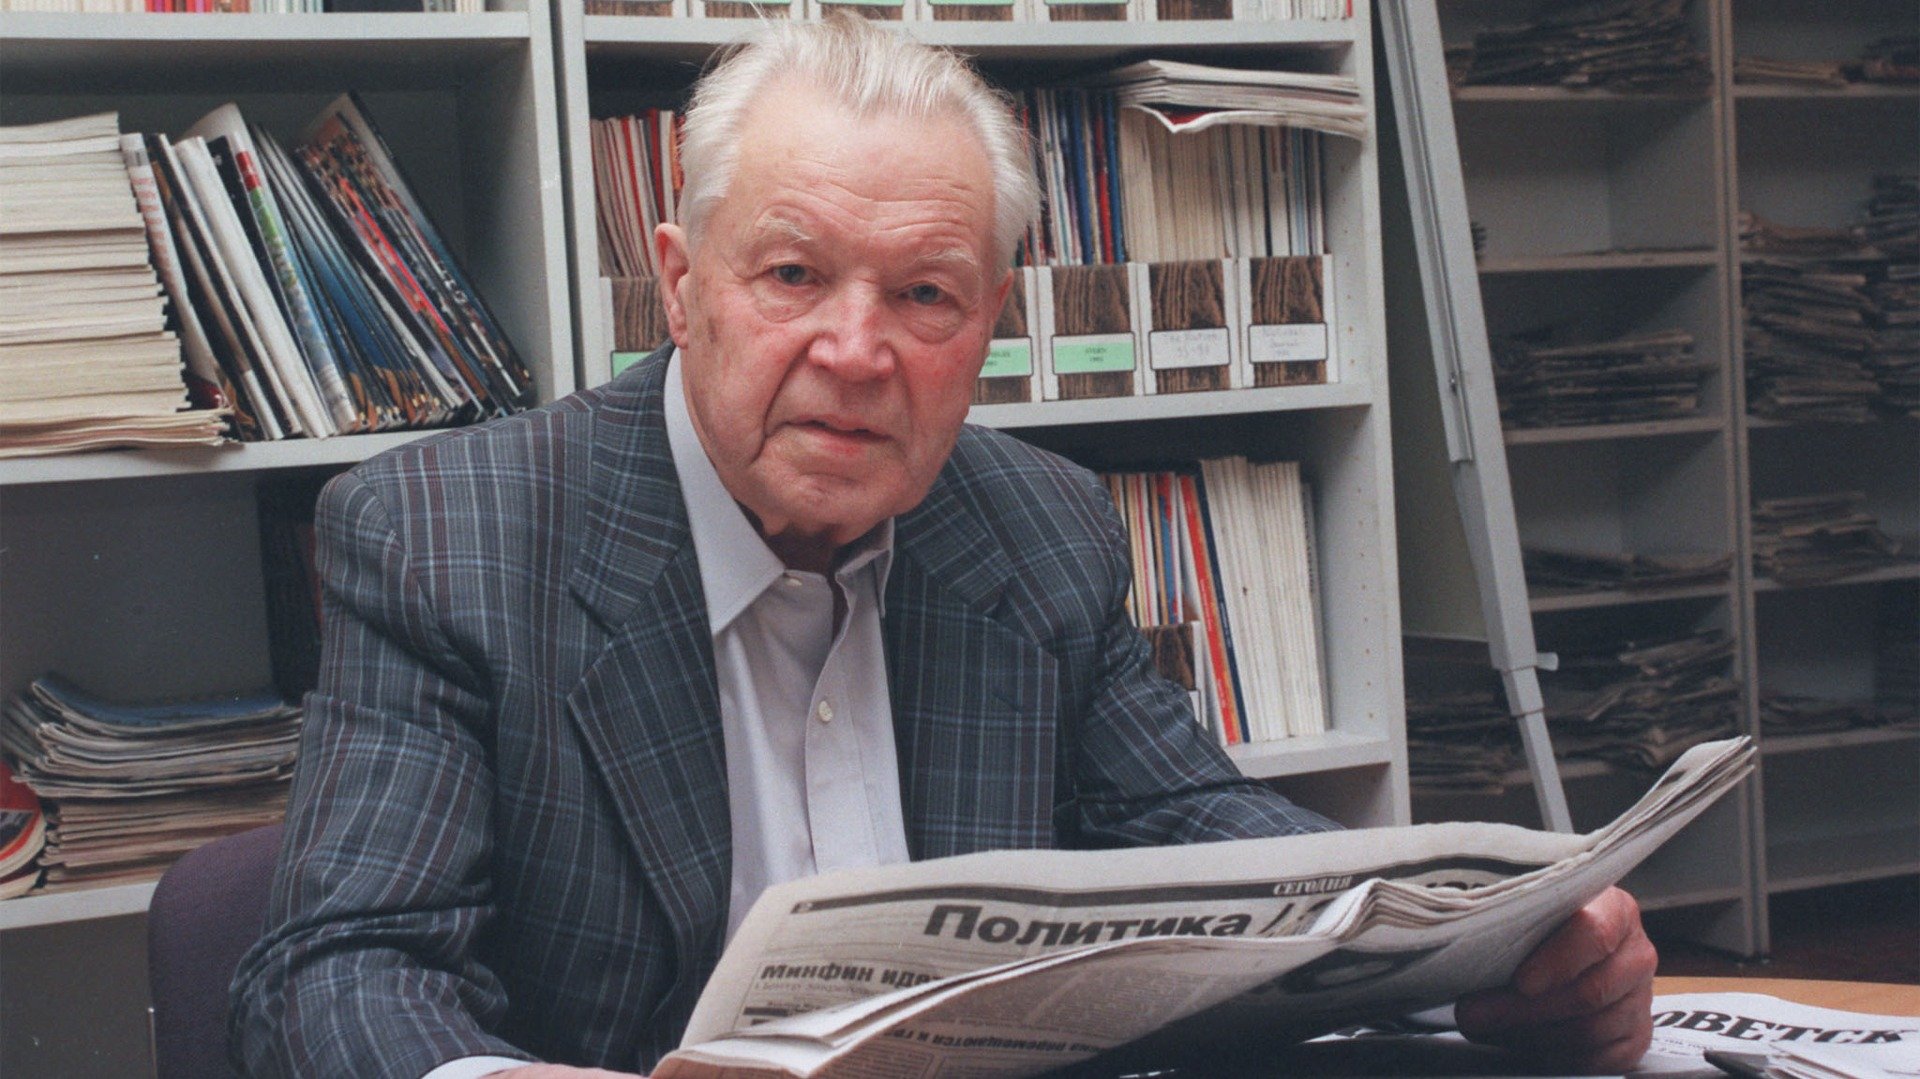 Залыгин Сергей — главный редактор журнала «Новый мир», 1995 год. Фото: Ираклий Чохонелидзе / ИТАР-ТАСС